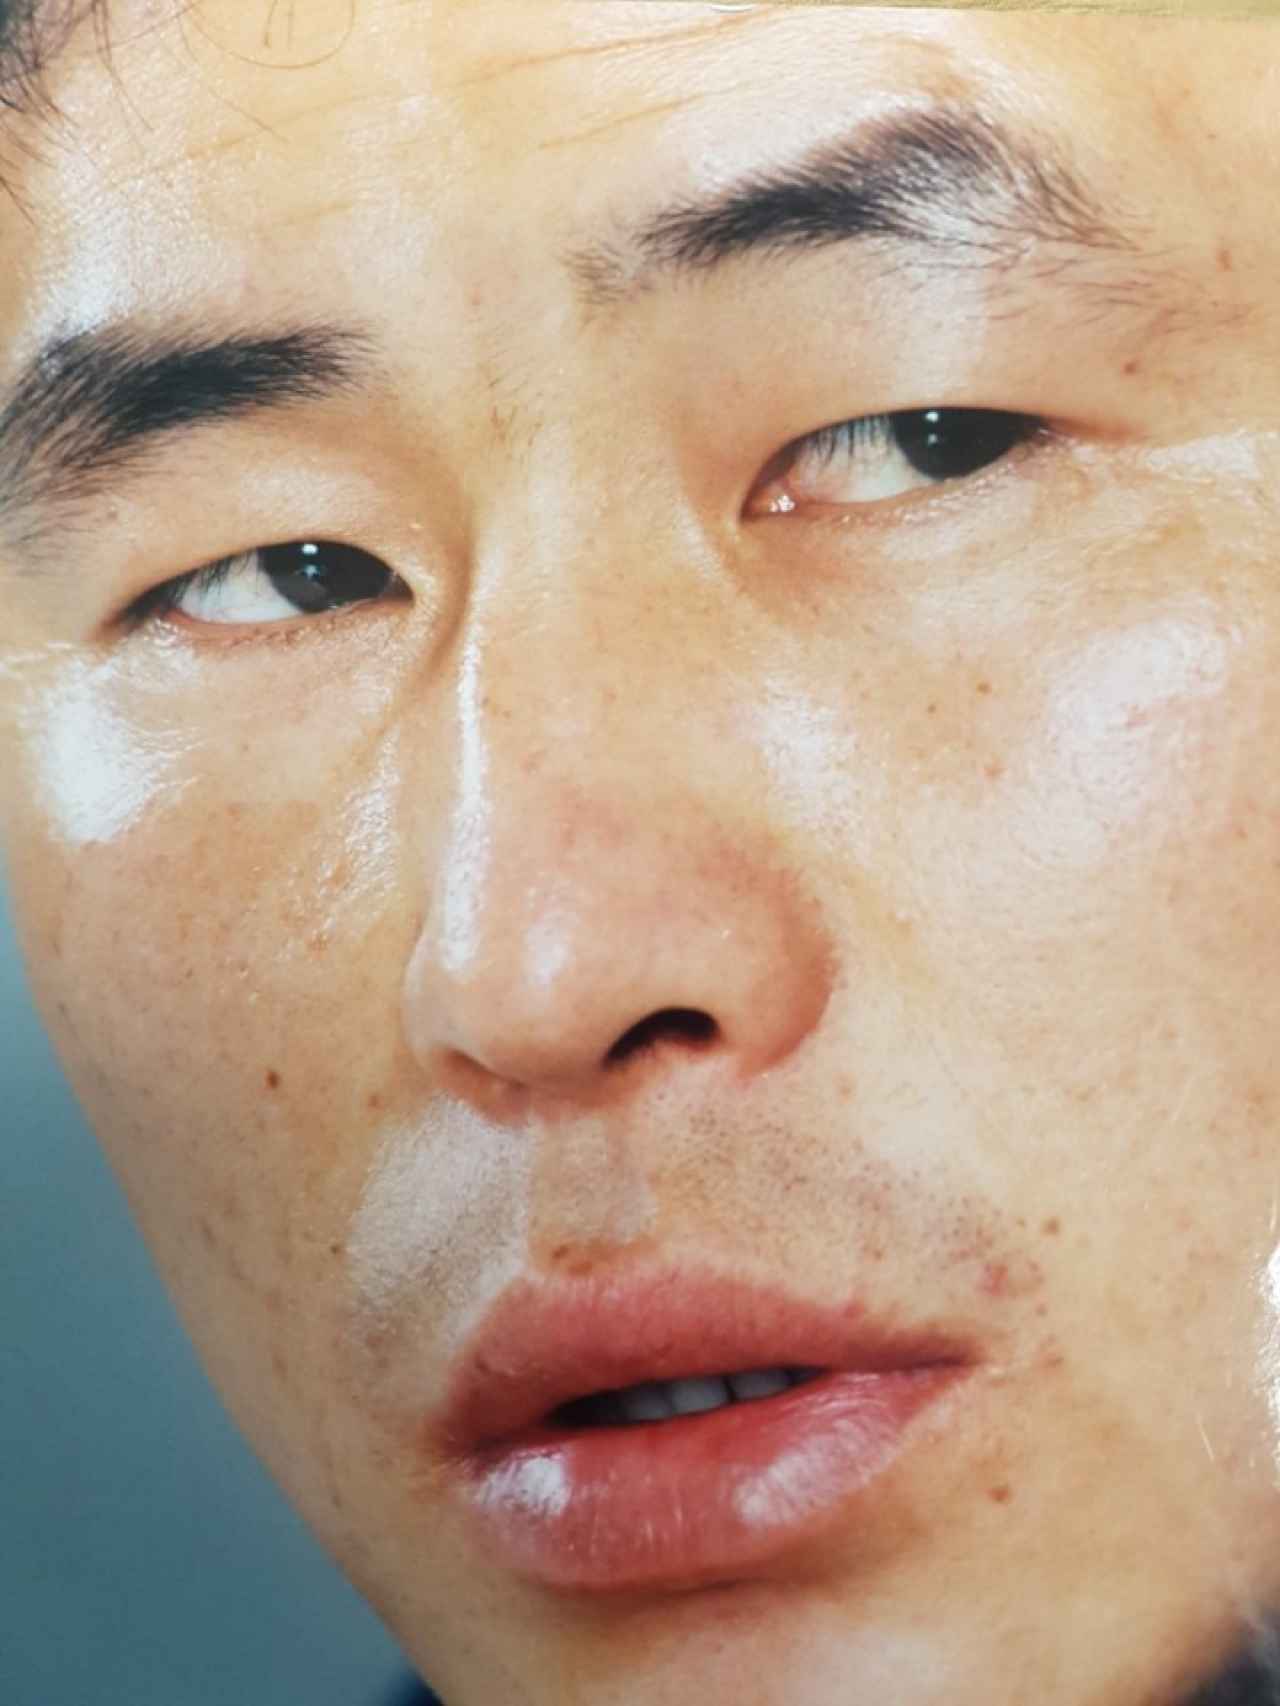 La familia de Ahn fue a la cárcel tras criticar el régimen norcoreano.